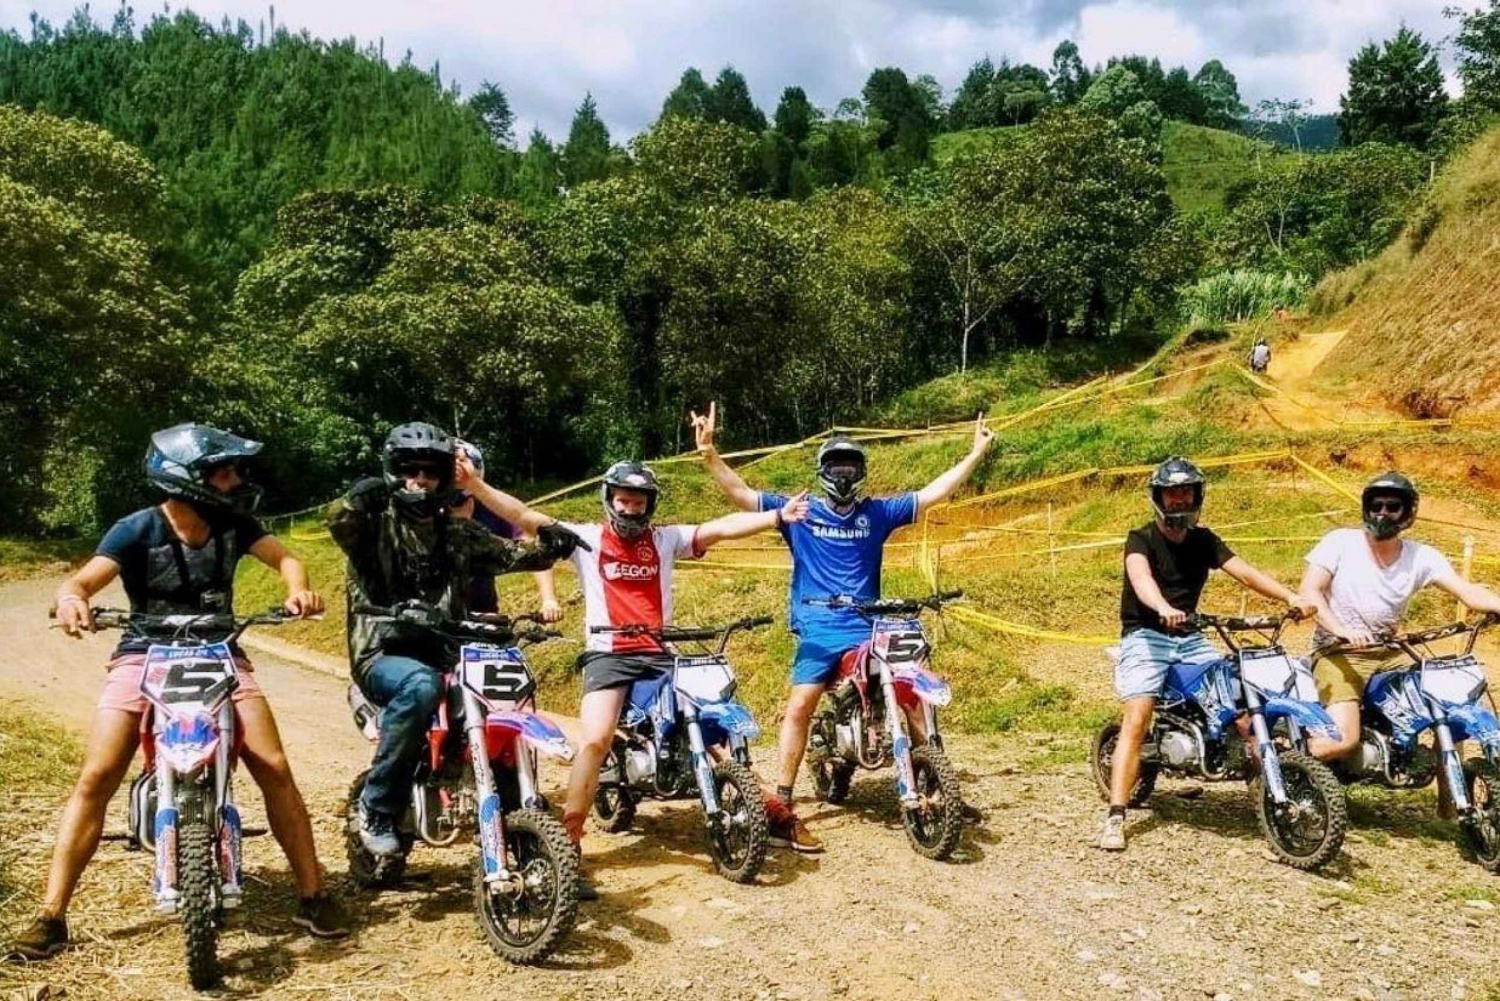 Medellín: Mini-Motor Dirt Bike Race